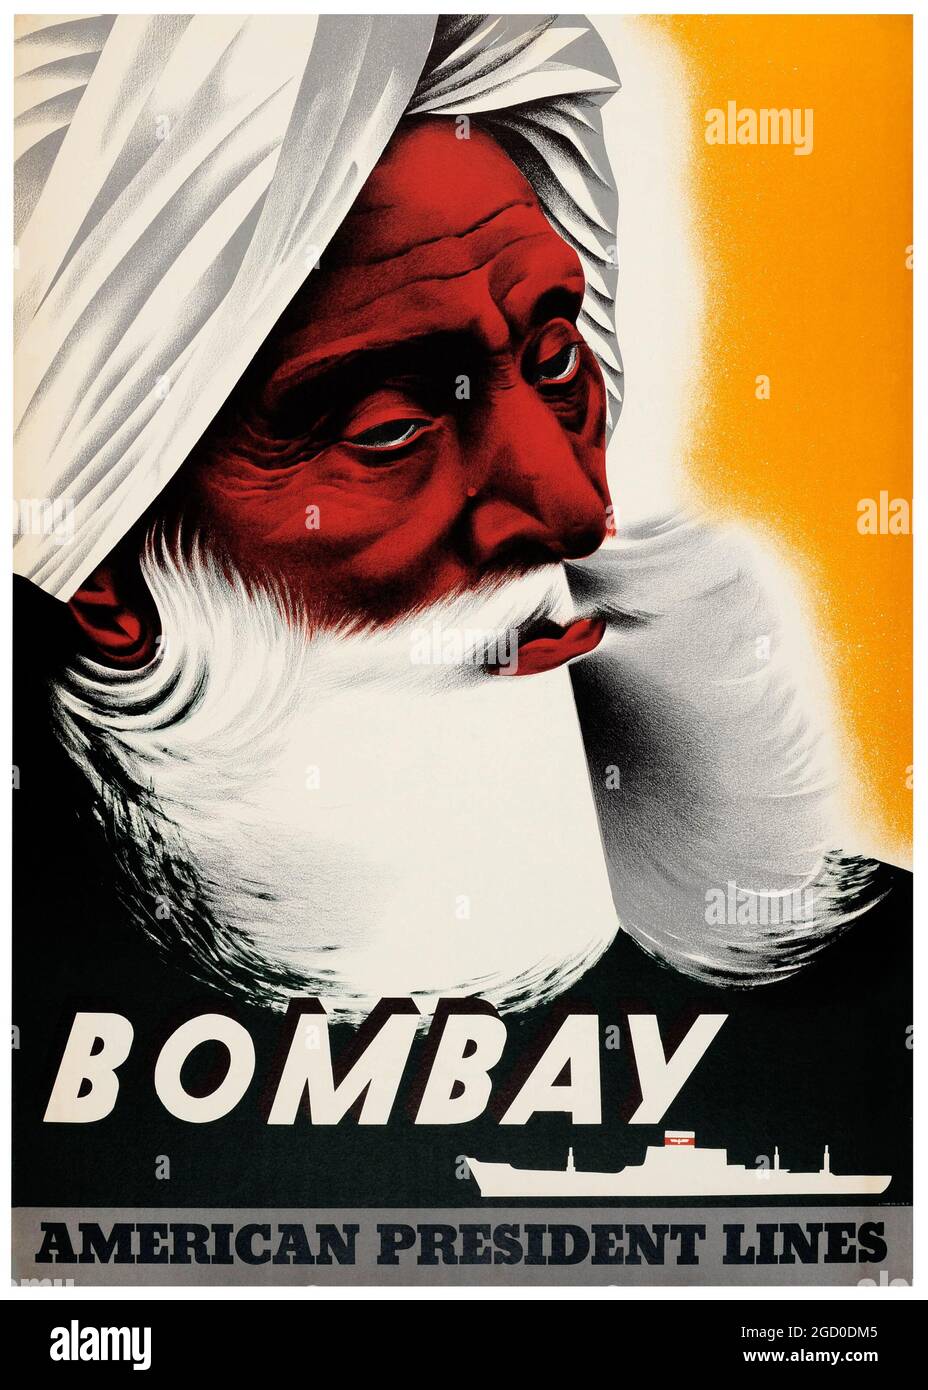 Affiche voyage bateau de croisière vintage Bombay Inde, American President Lines – USA 1950. Bombay (maintenant Mumbai) Inde. Artiste inconnu. Homme dans un turban. Banque D'Images